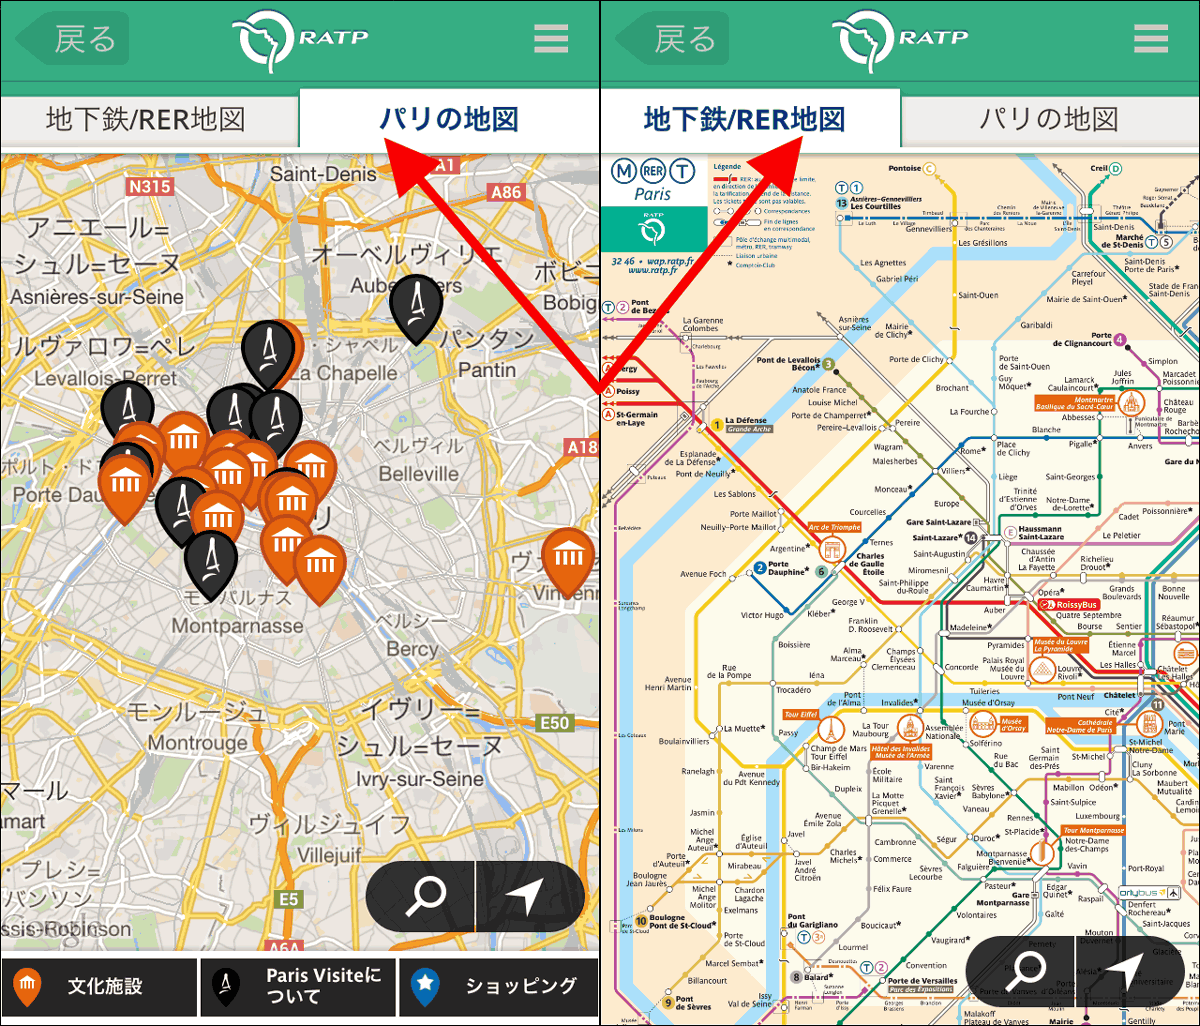 無料でパリ旅行に超絶役立つオフラインgps表示 乗換検索地図アプリ Visit Paris By Metro レビュー Gigazine